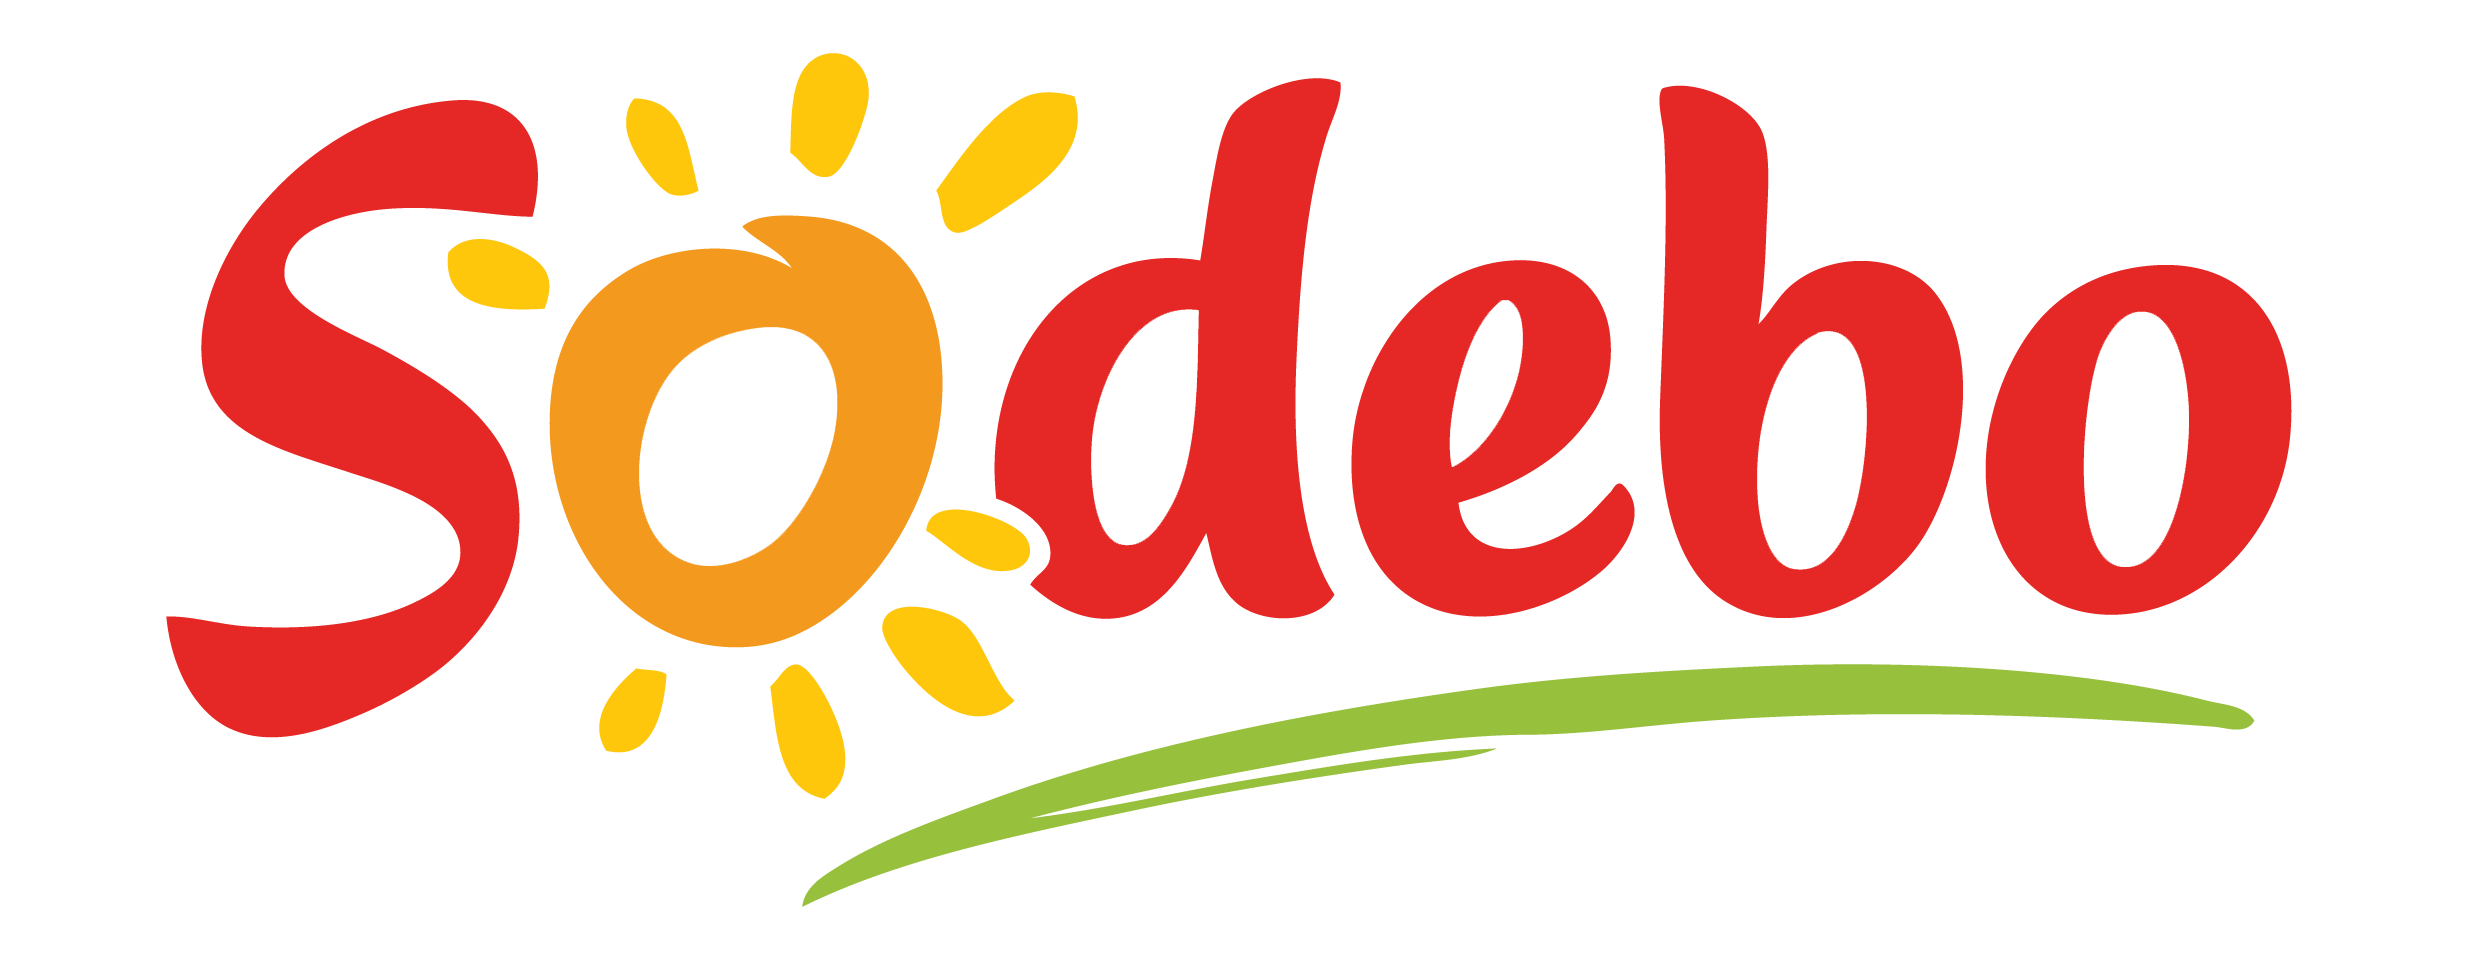 Logo sodebo